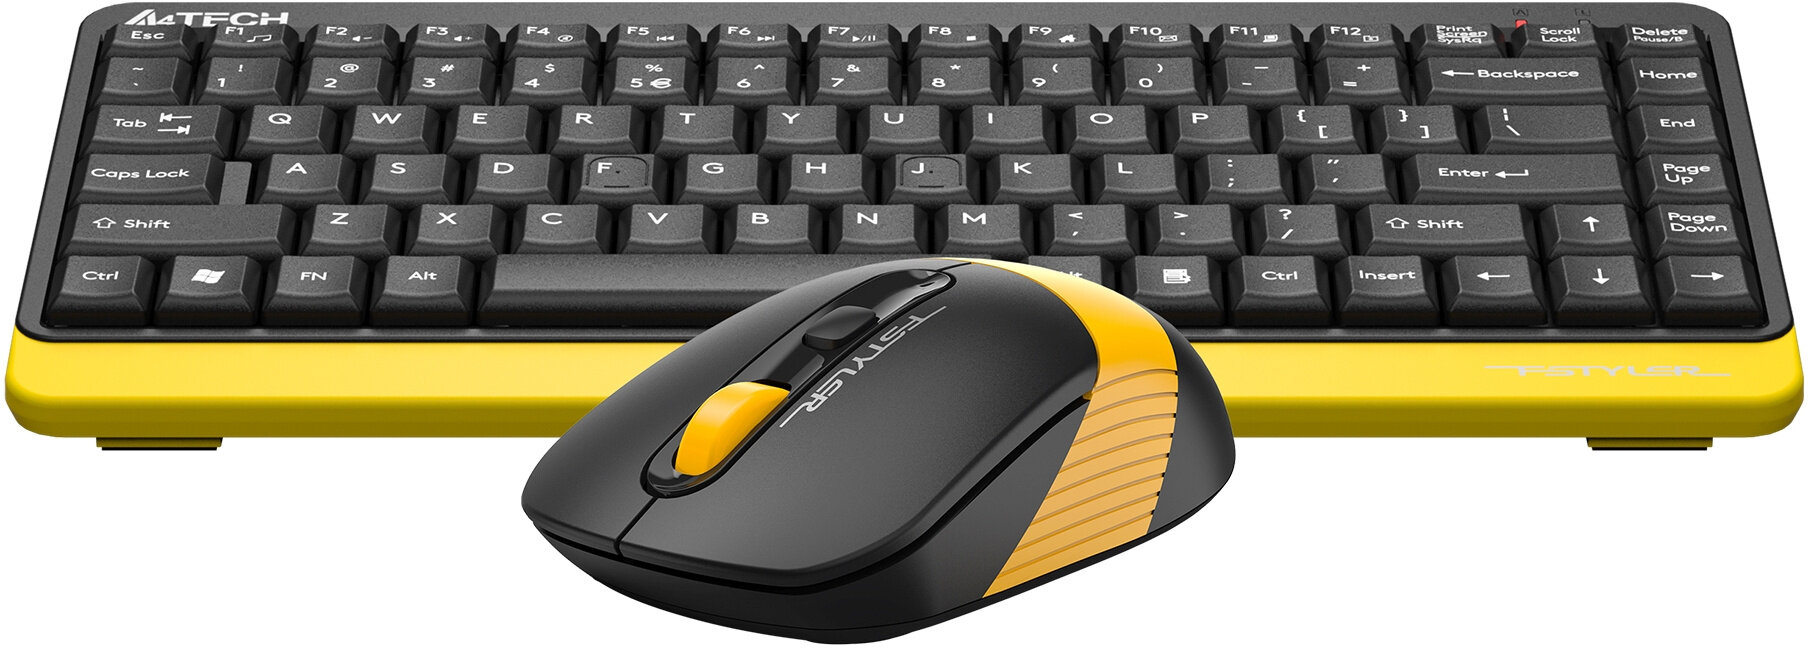 Клавиатура + мышь A4Tech Fstyler FG1110 клав: черный/желтый мышь: черный/желтый USB